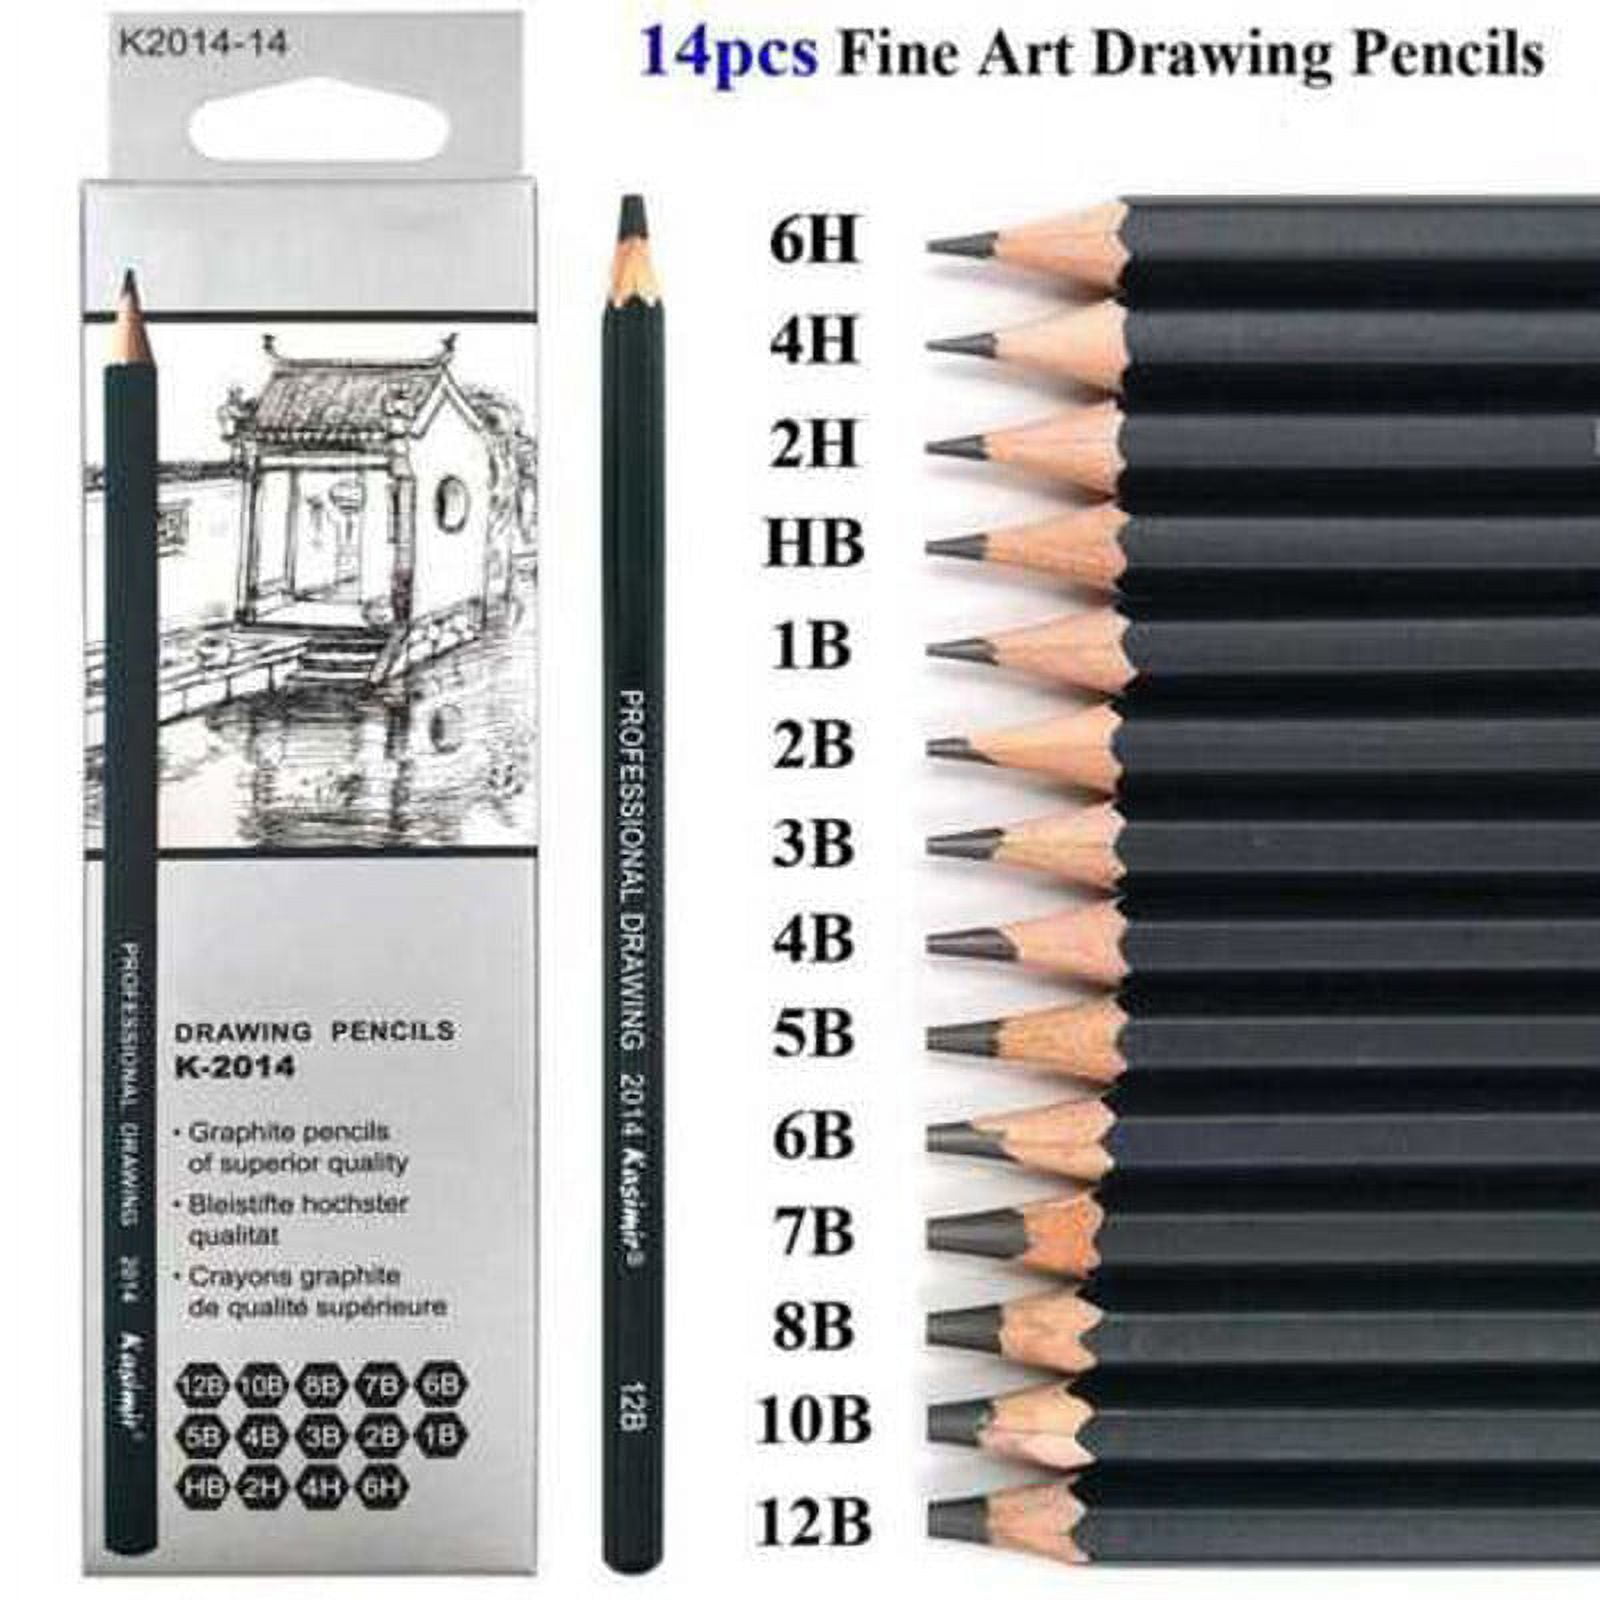 Artzmore Drawing Pencils Set - 12 Piece Sketching Pencils, Graphite  Pencils, Shading Pencils for Sketching, Art Pencils for Drawing and  Shading, Sketch Pencils …